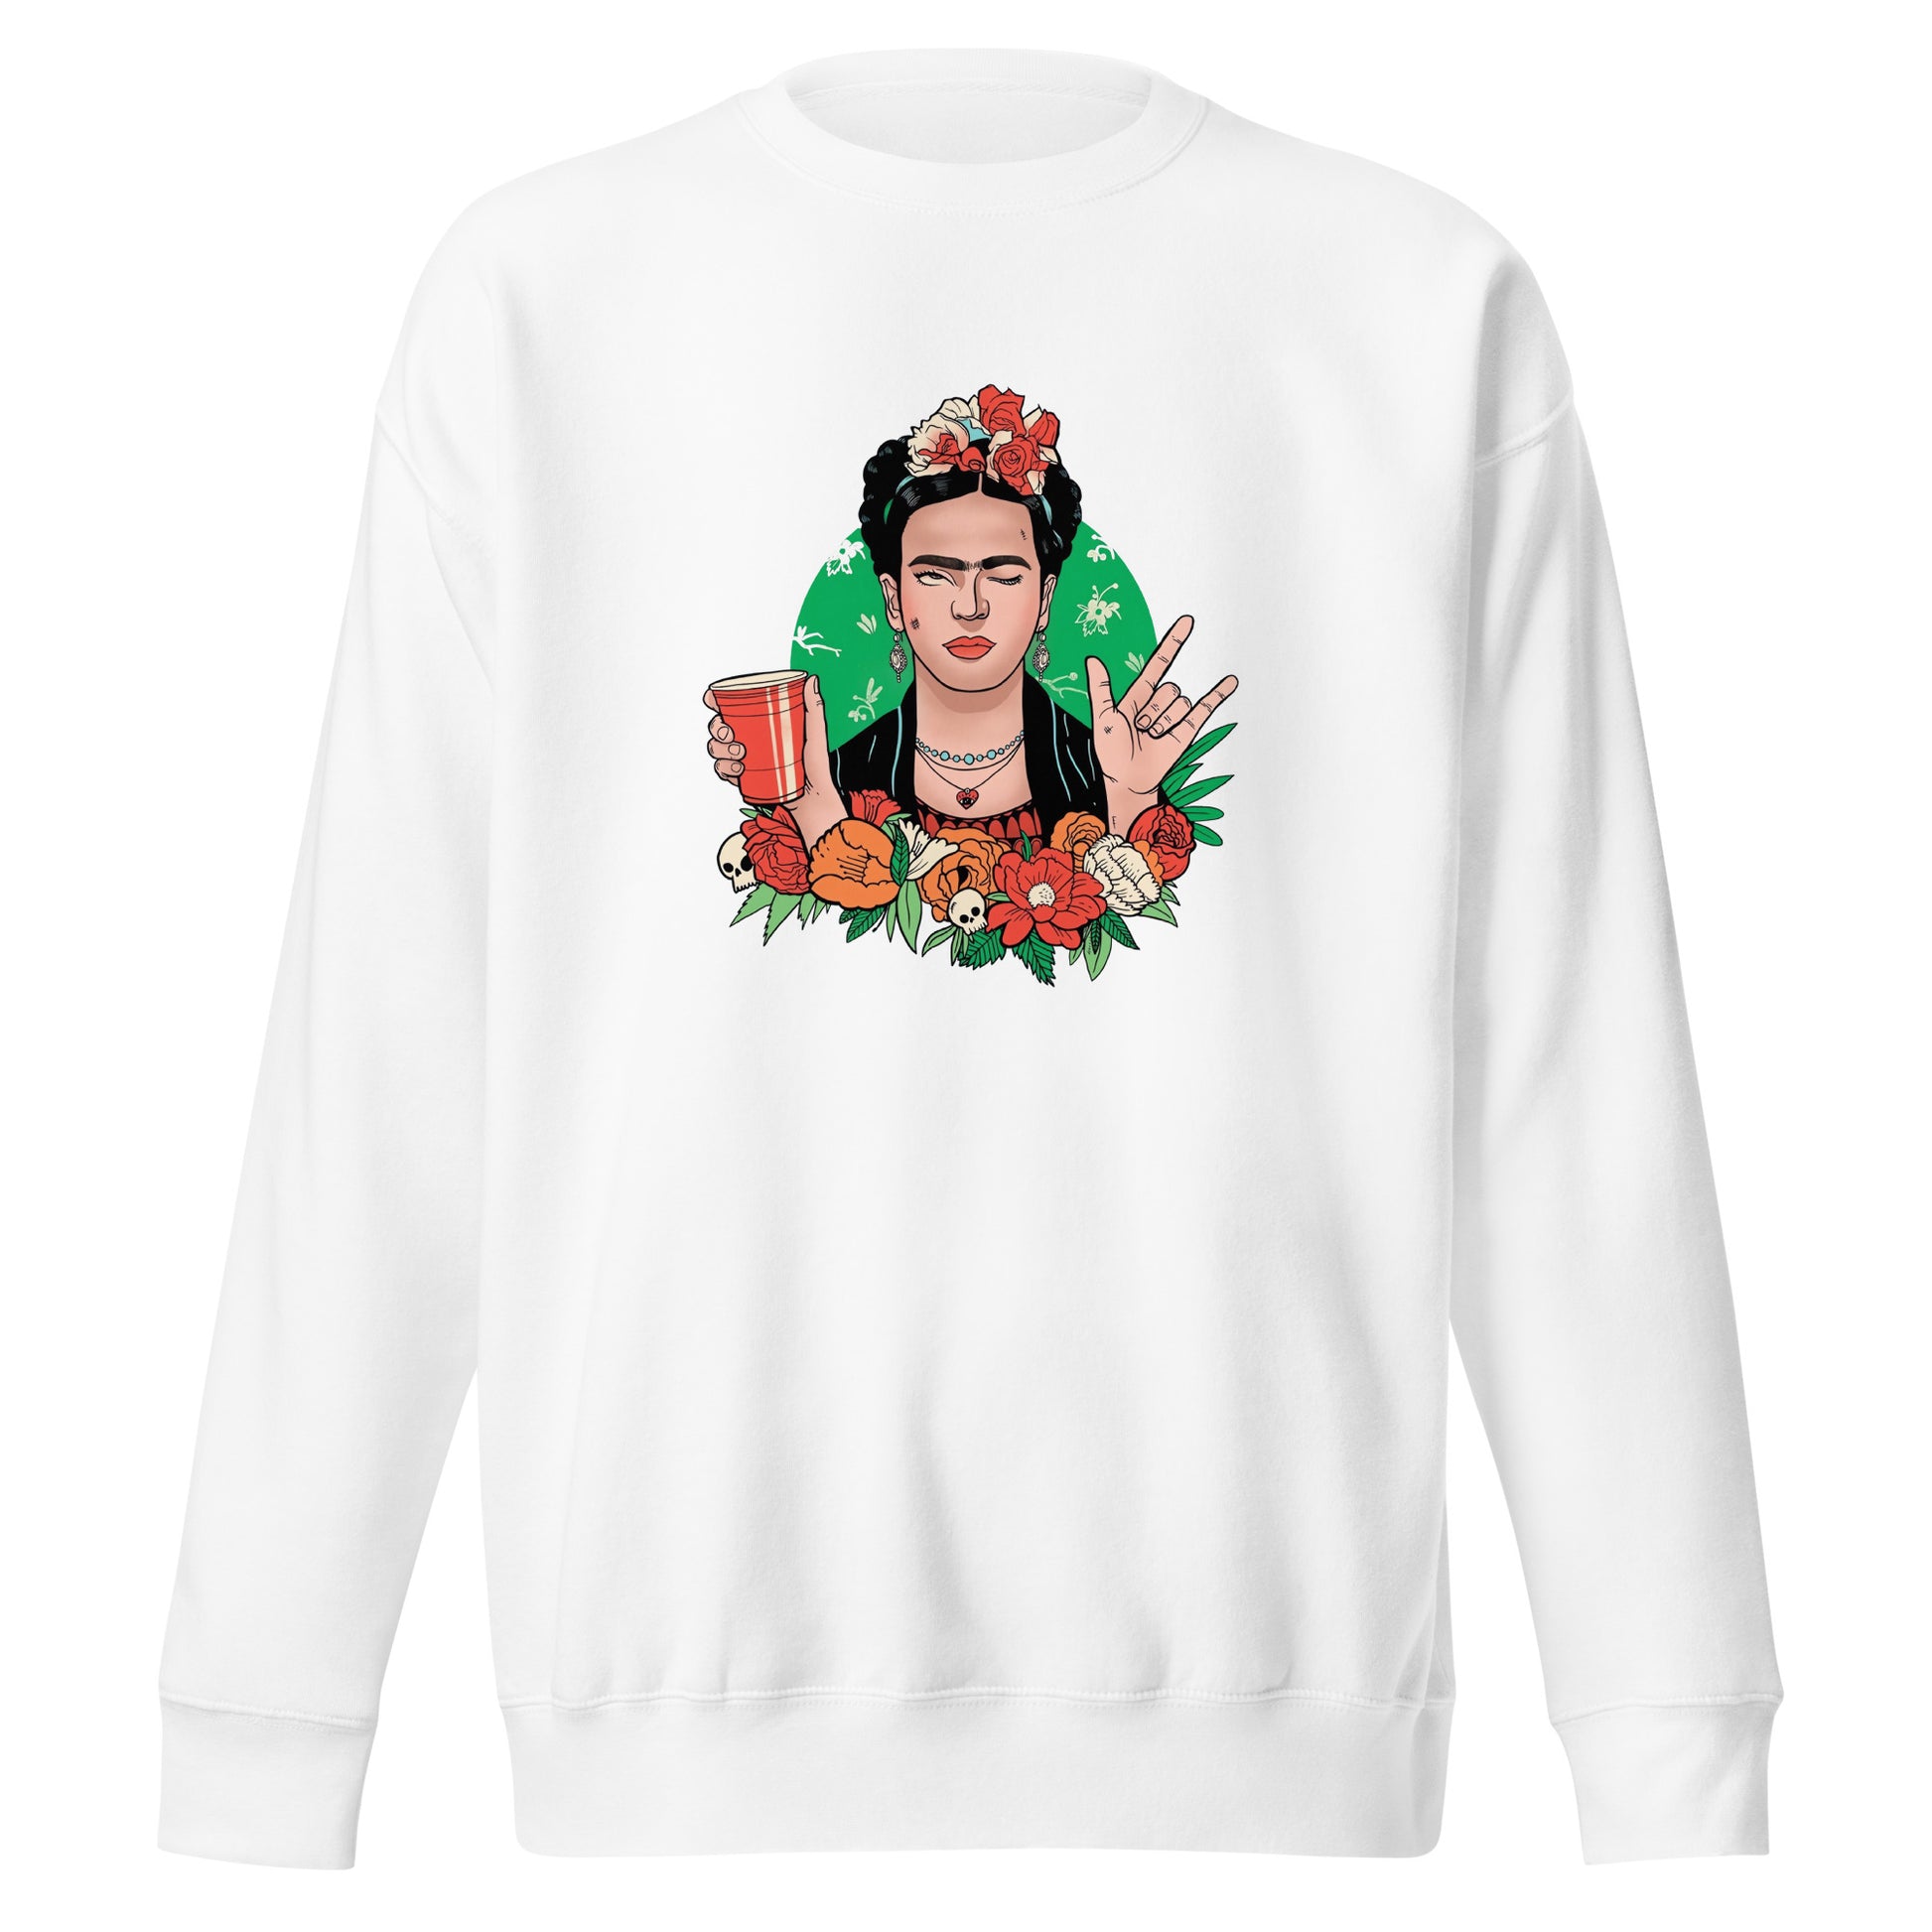 Suéter de Frida Khalo Style ,Descubre calidad excepcional y estampados duraderos. Encuentra estilo y orgullo en cada prenda. Compra ahora!